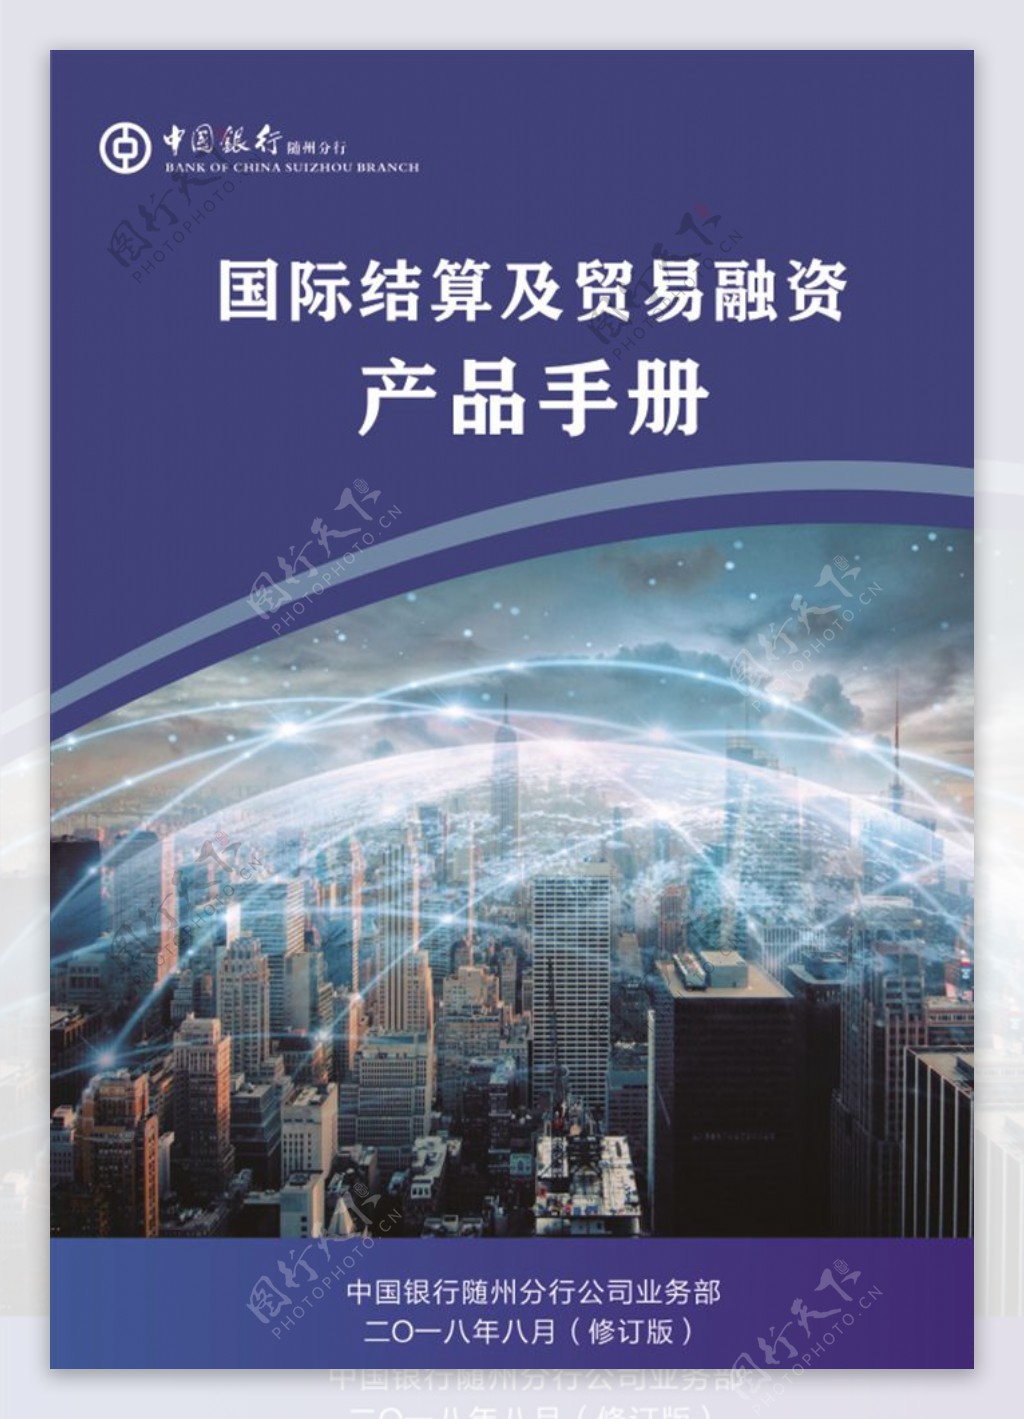 产品手册贸易融资中国银行